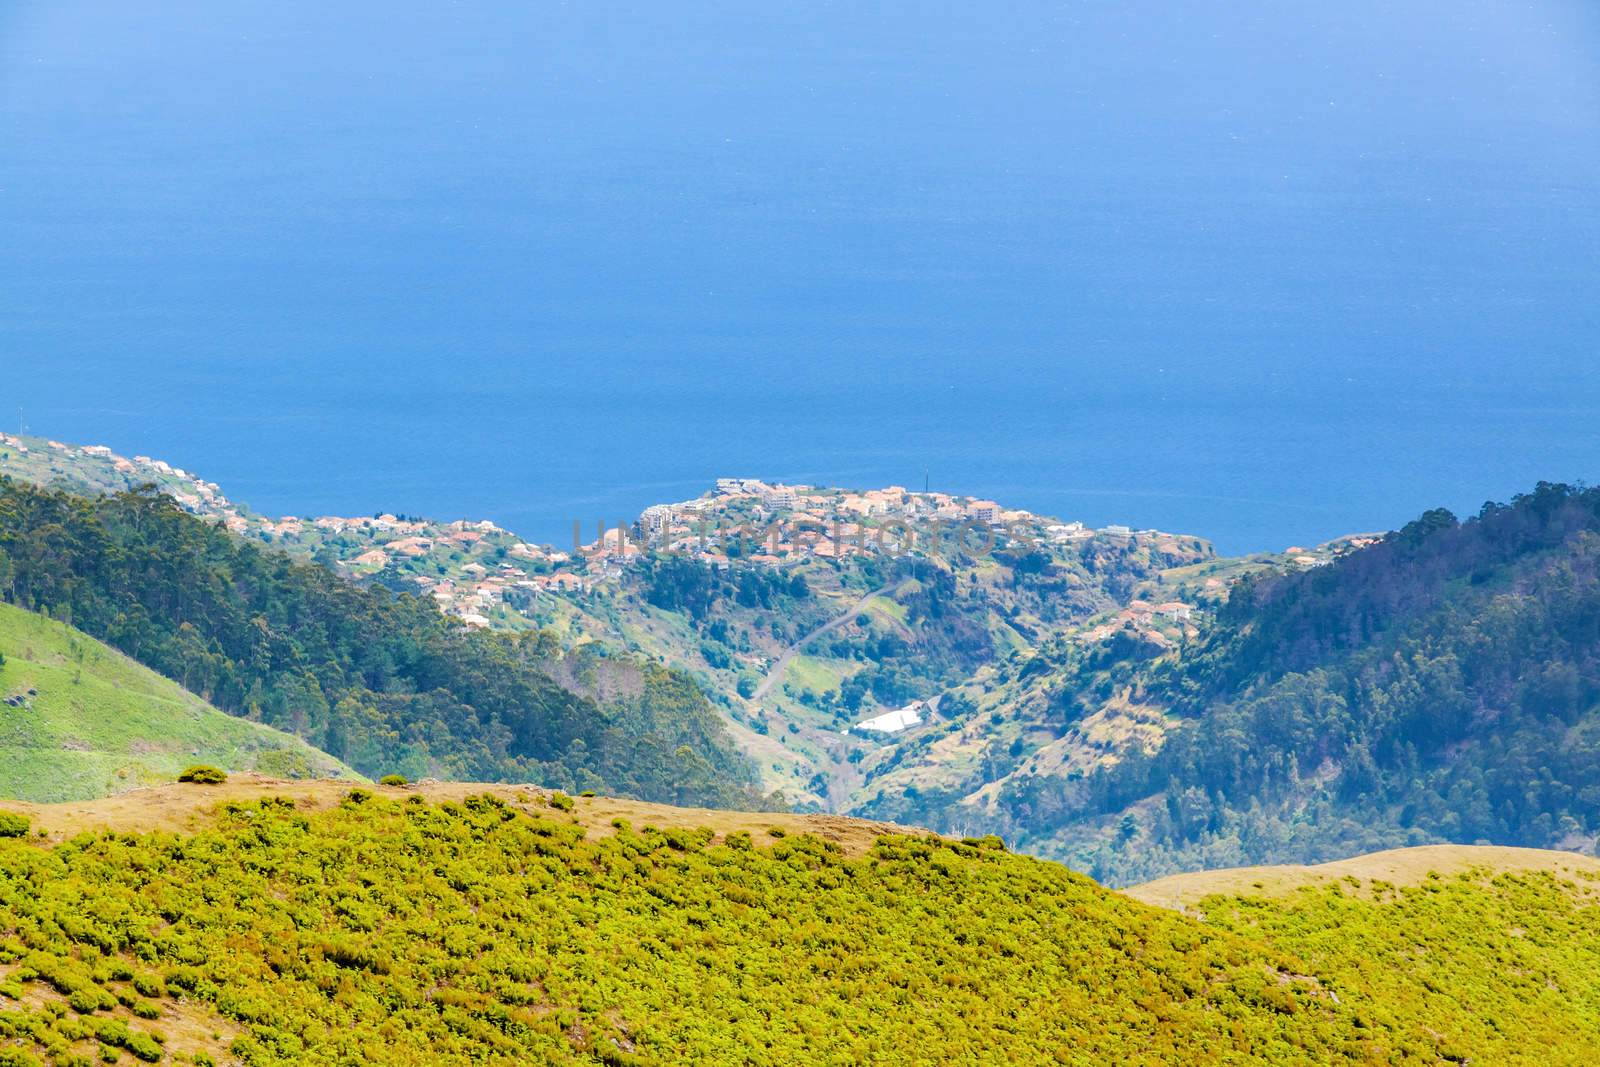 Mountain's crest in the north of Madeira island, view towards Prazeres - Calheta